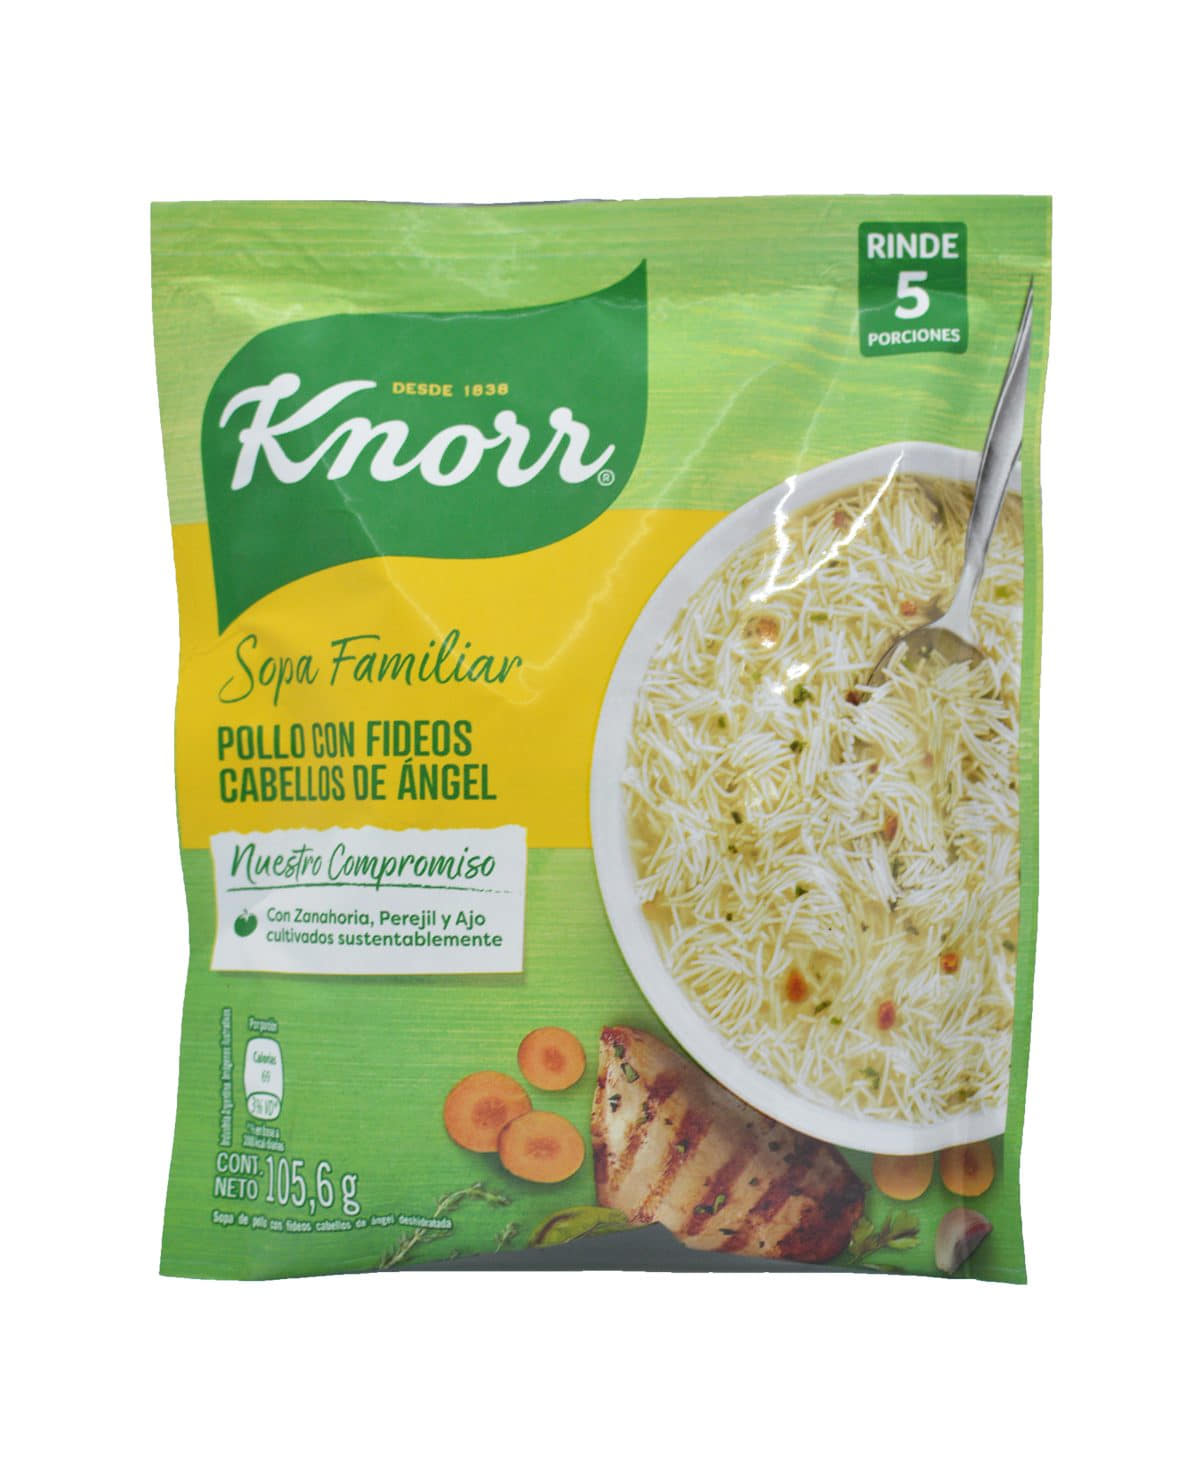 Sopa Knorr Pollo Con Fideos Cabellos De Angel 105,6 Gr